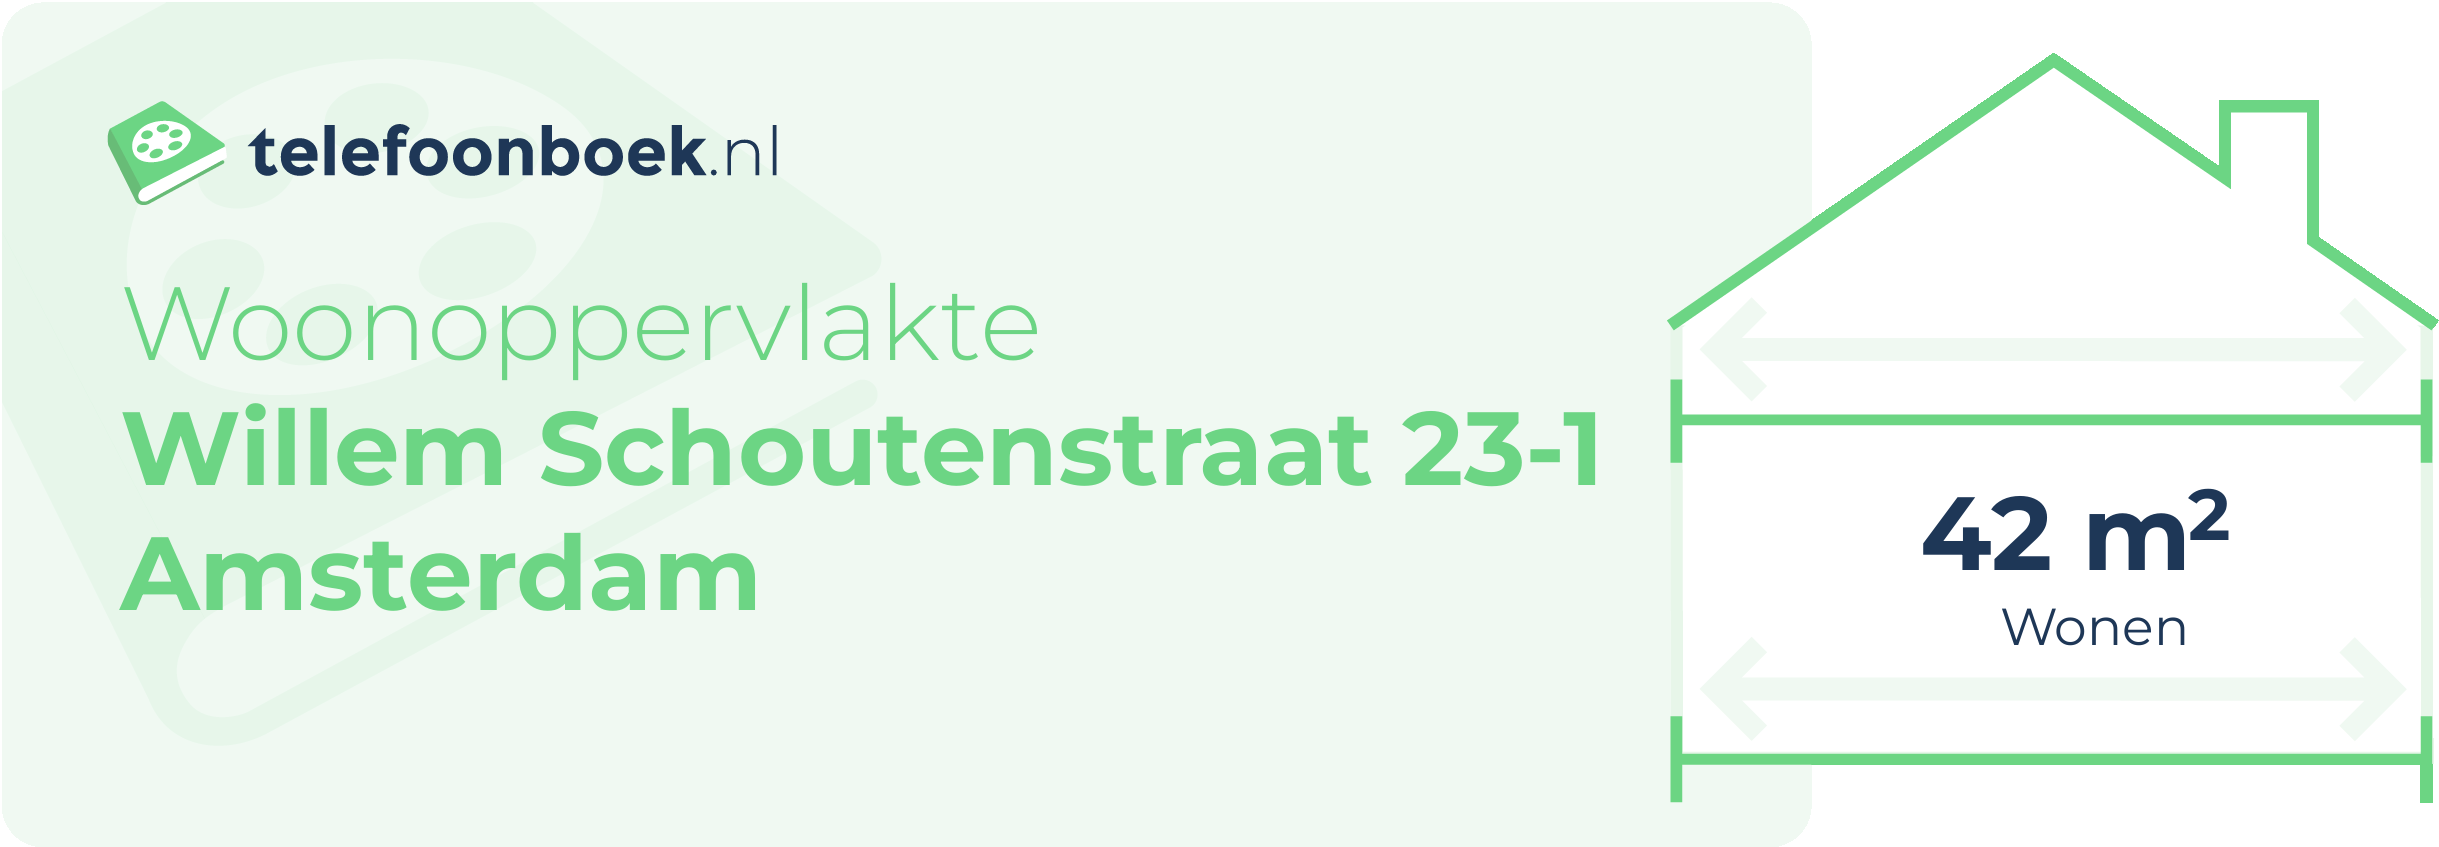 Woonoppervlakte Willem Schoutenstraat 23-1 Amsterdam